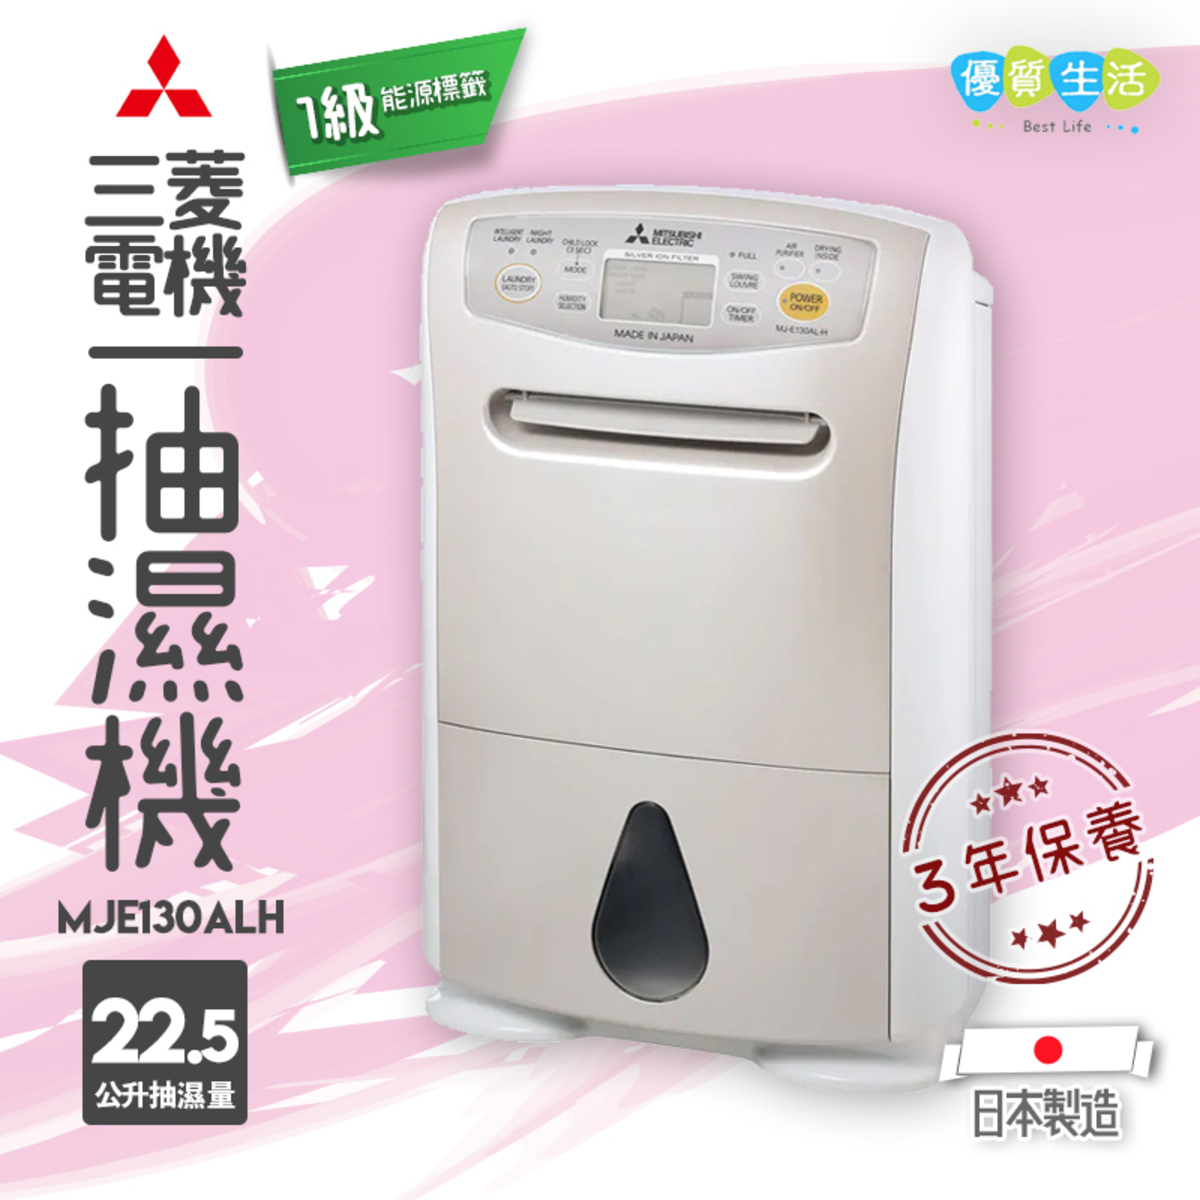 三菱電機 Mje130alh 22 5公升抽濕機1級能源標籤日本制造 香港電視hktvmall 網上購物